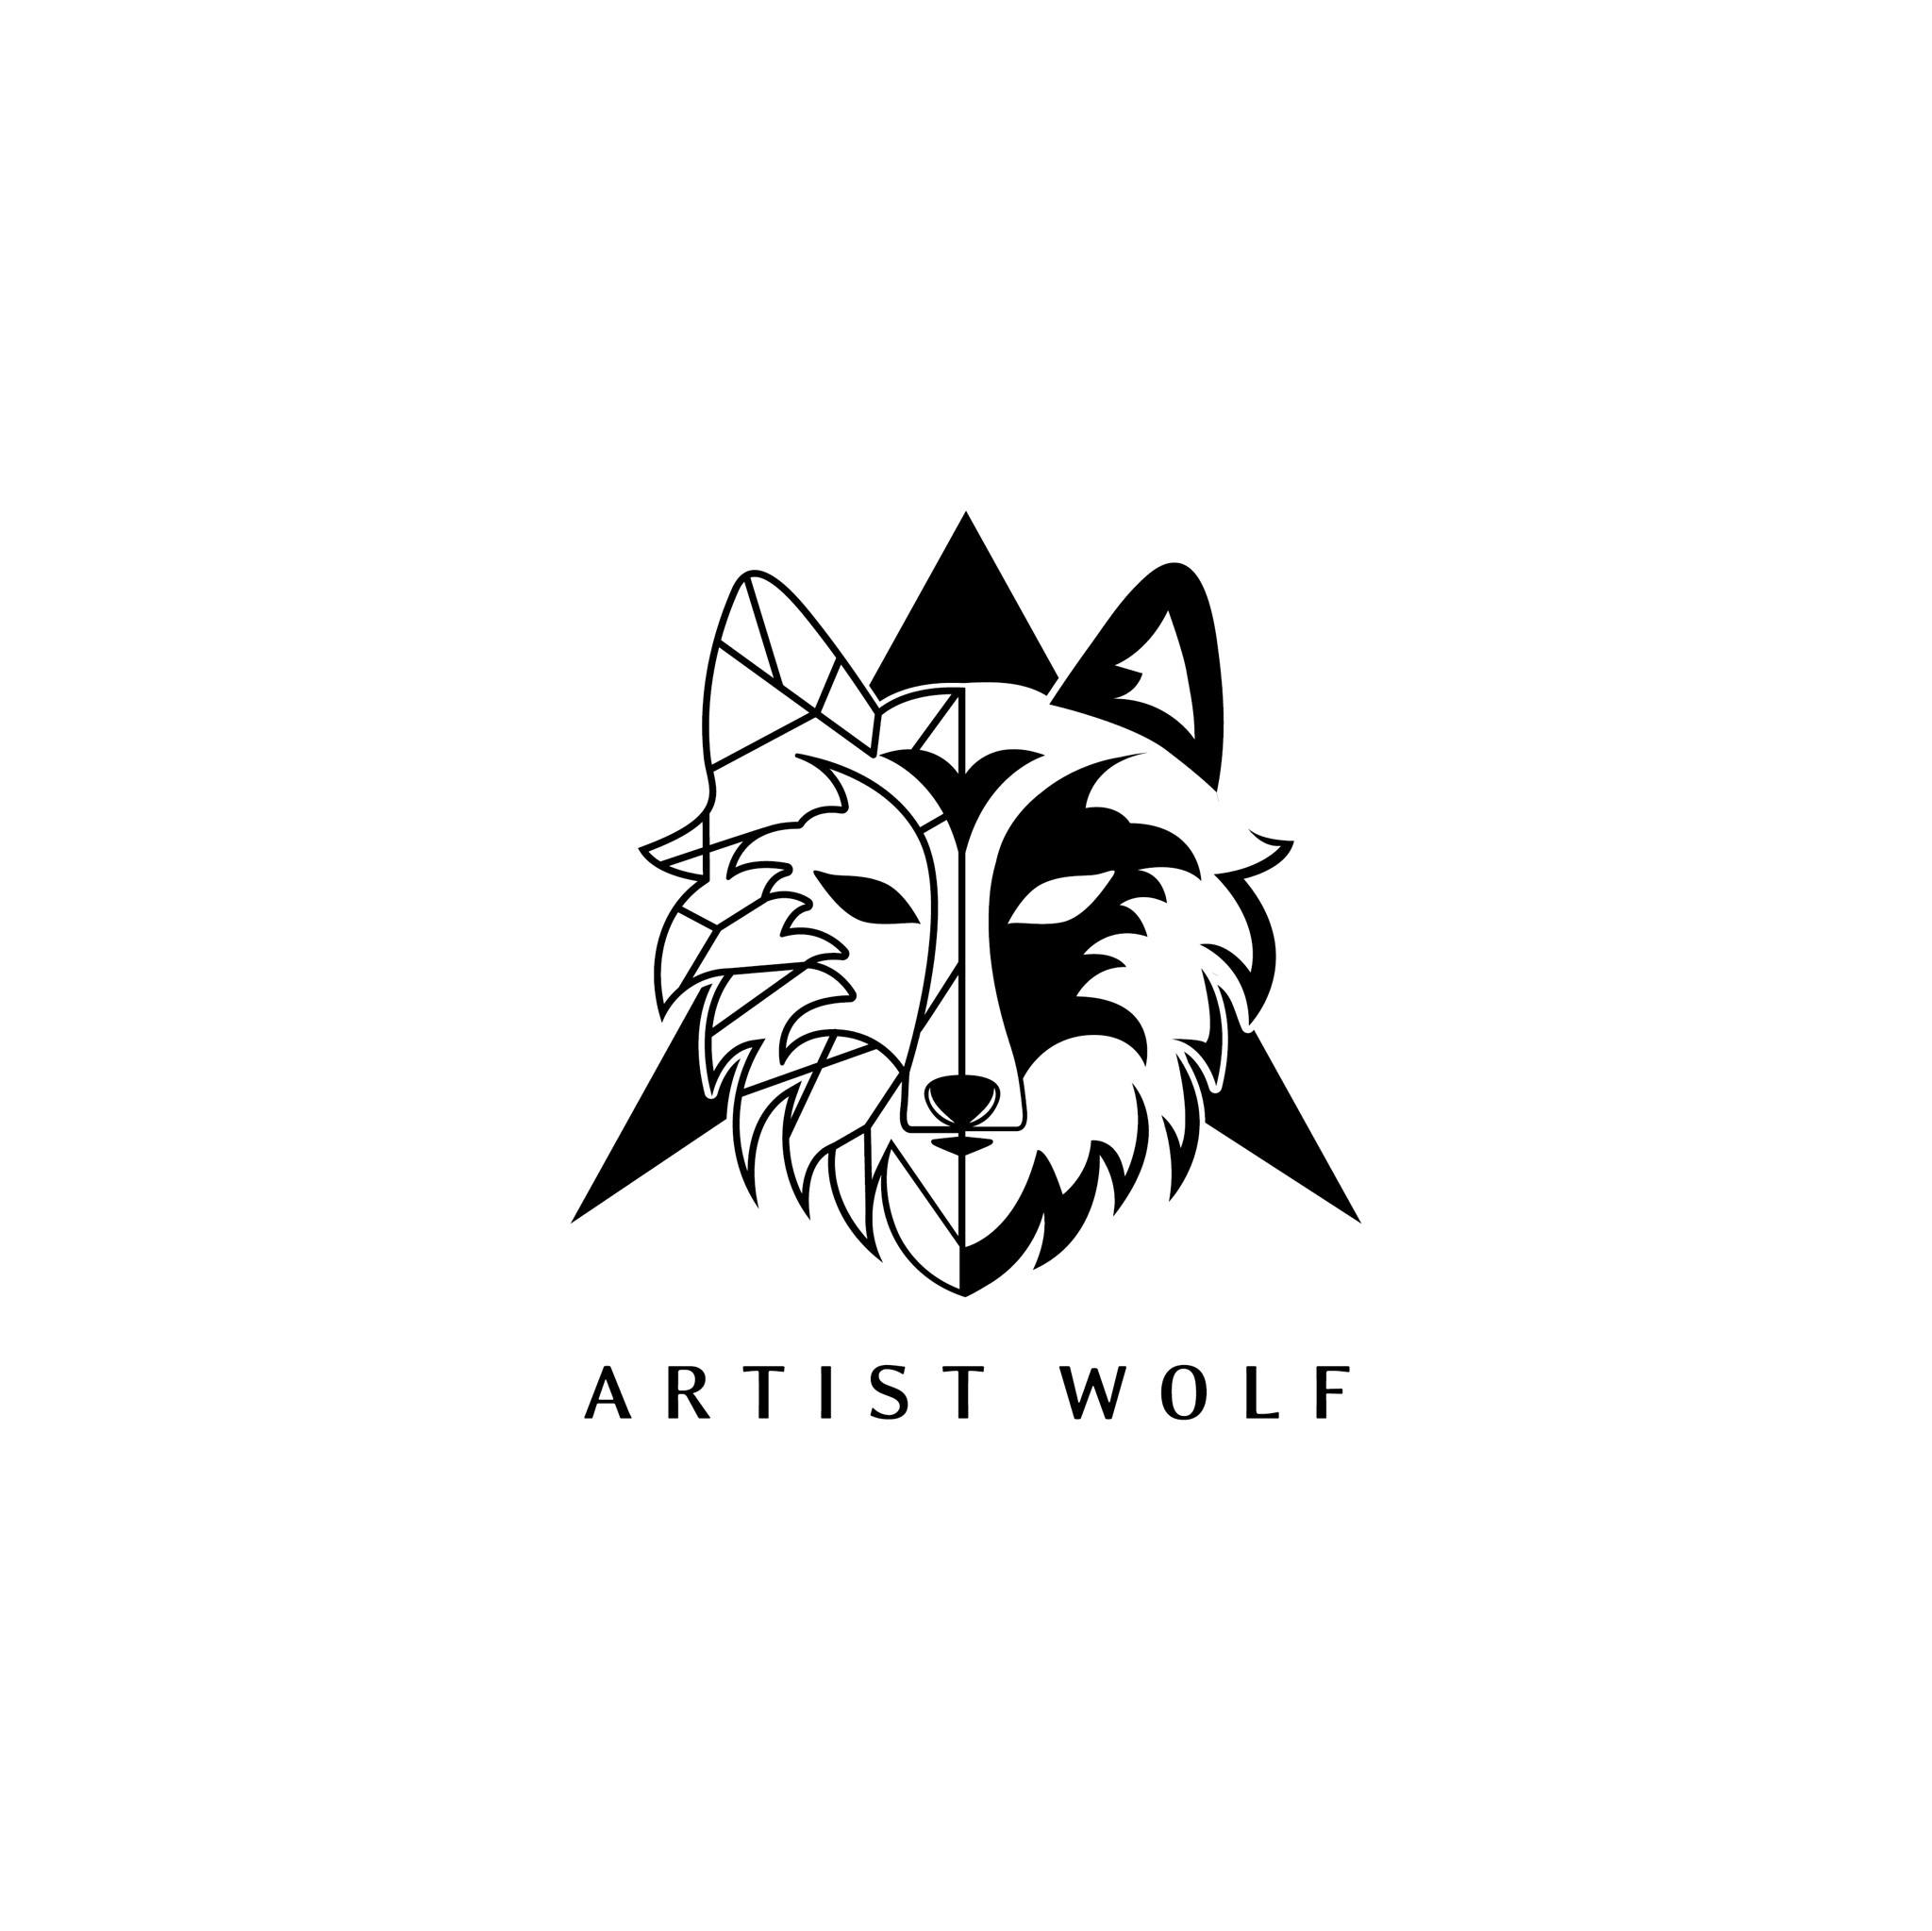 ARTIST WOLF